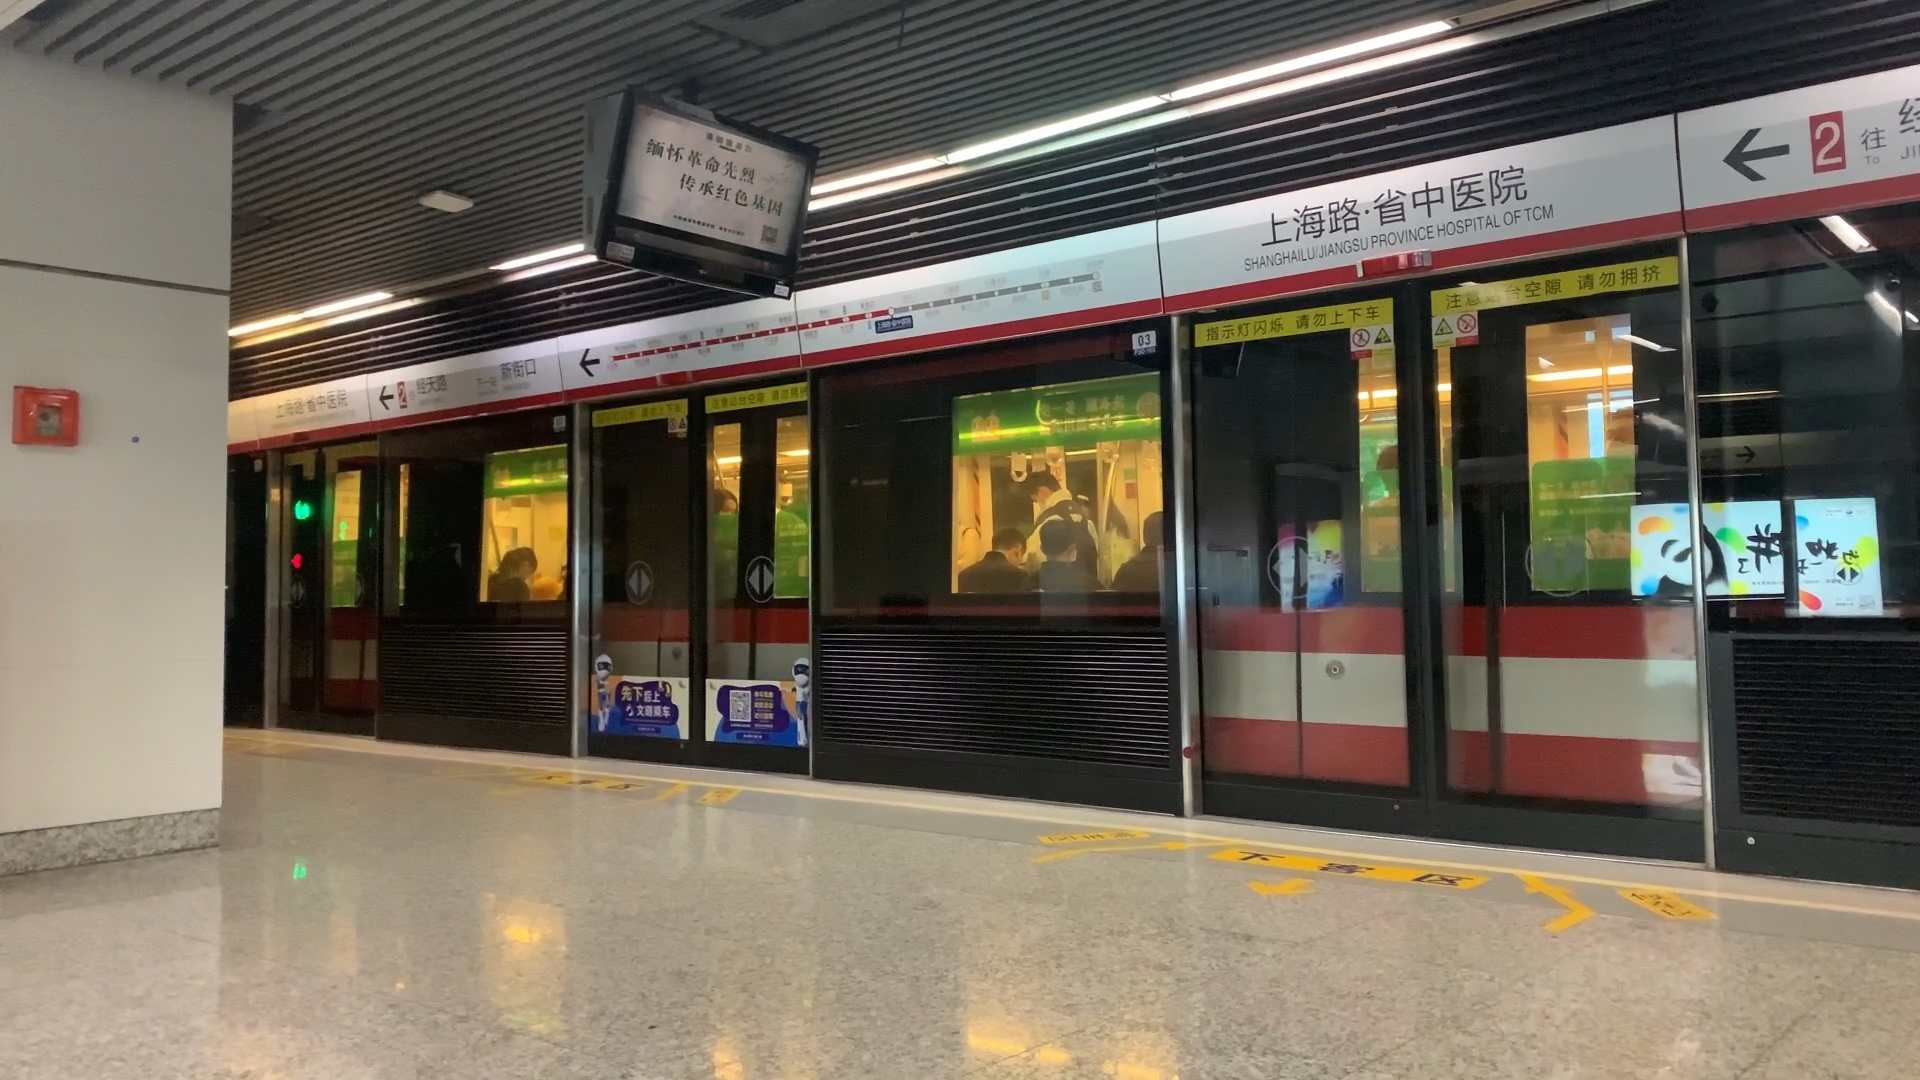 【南京地铁】2号线nj02